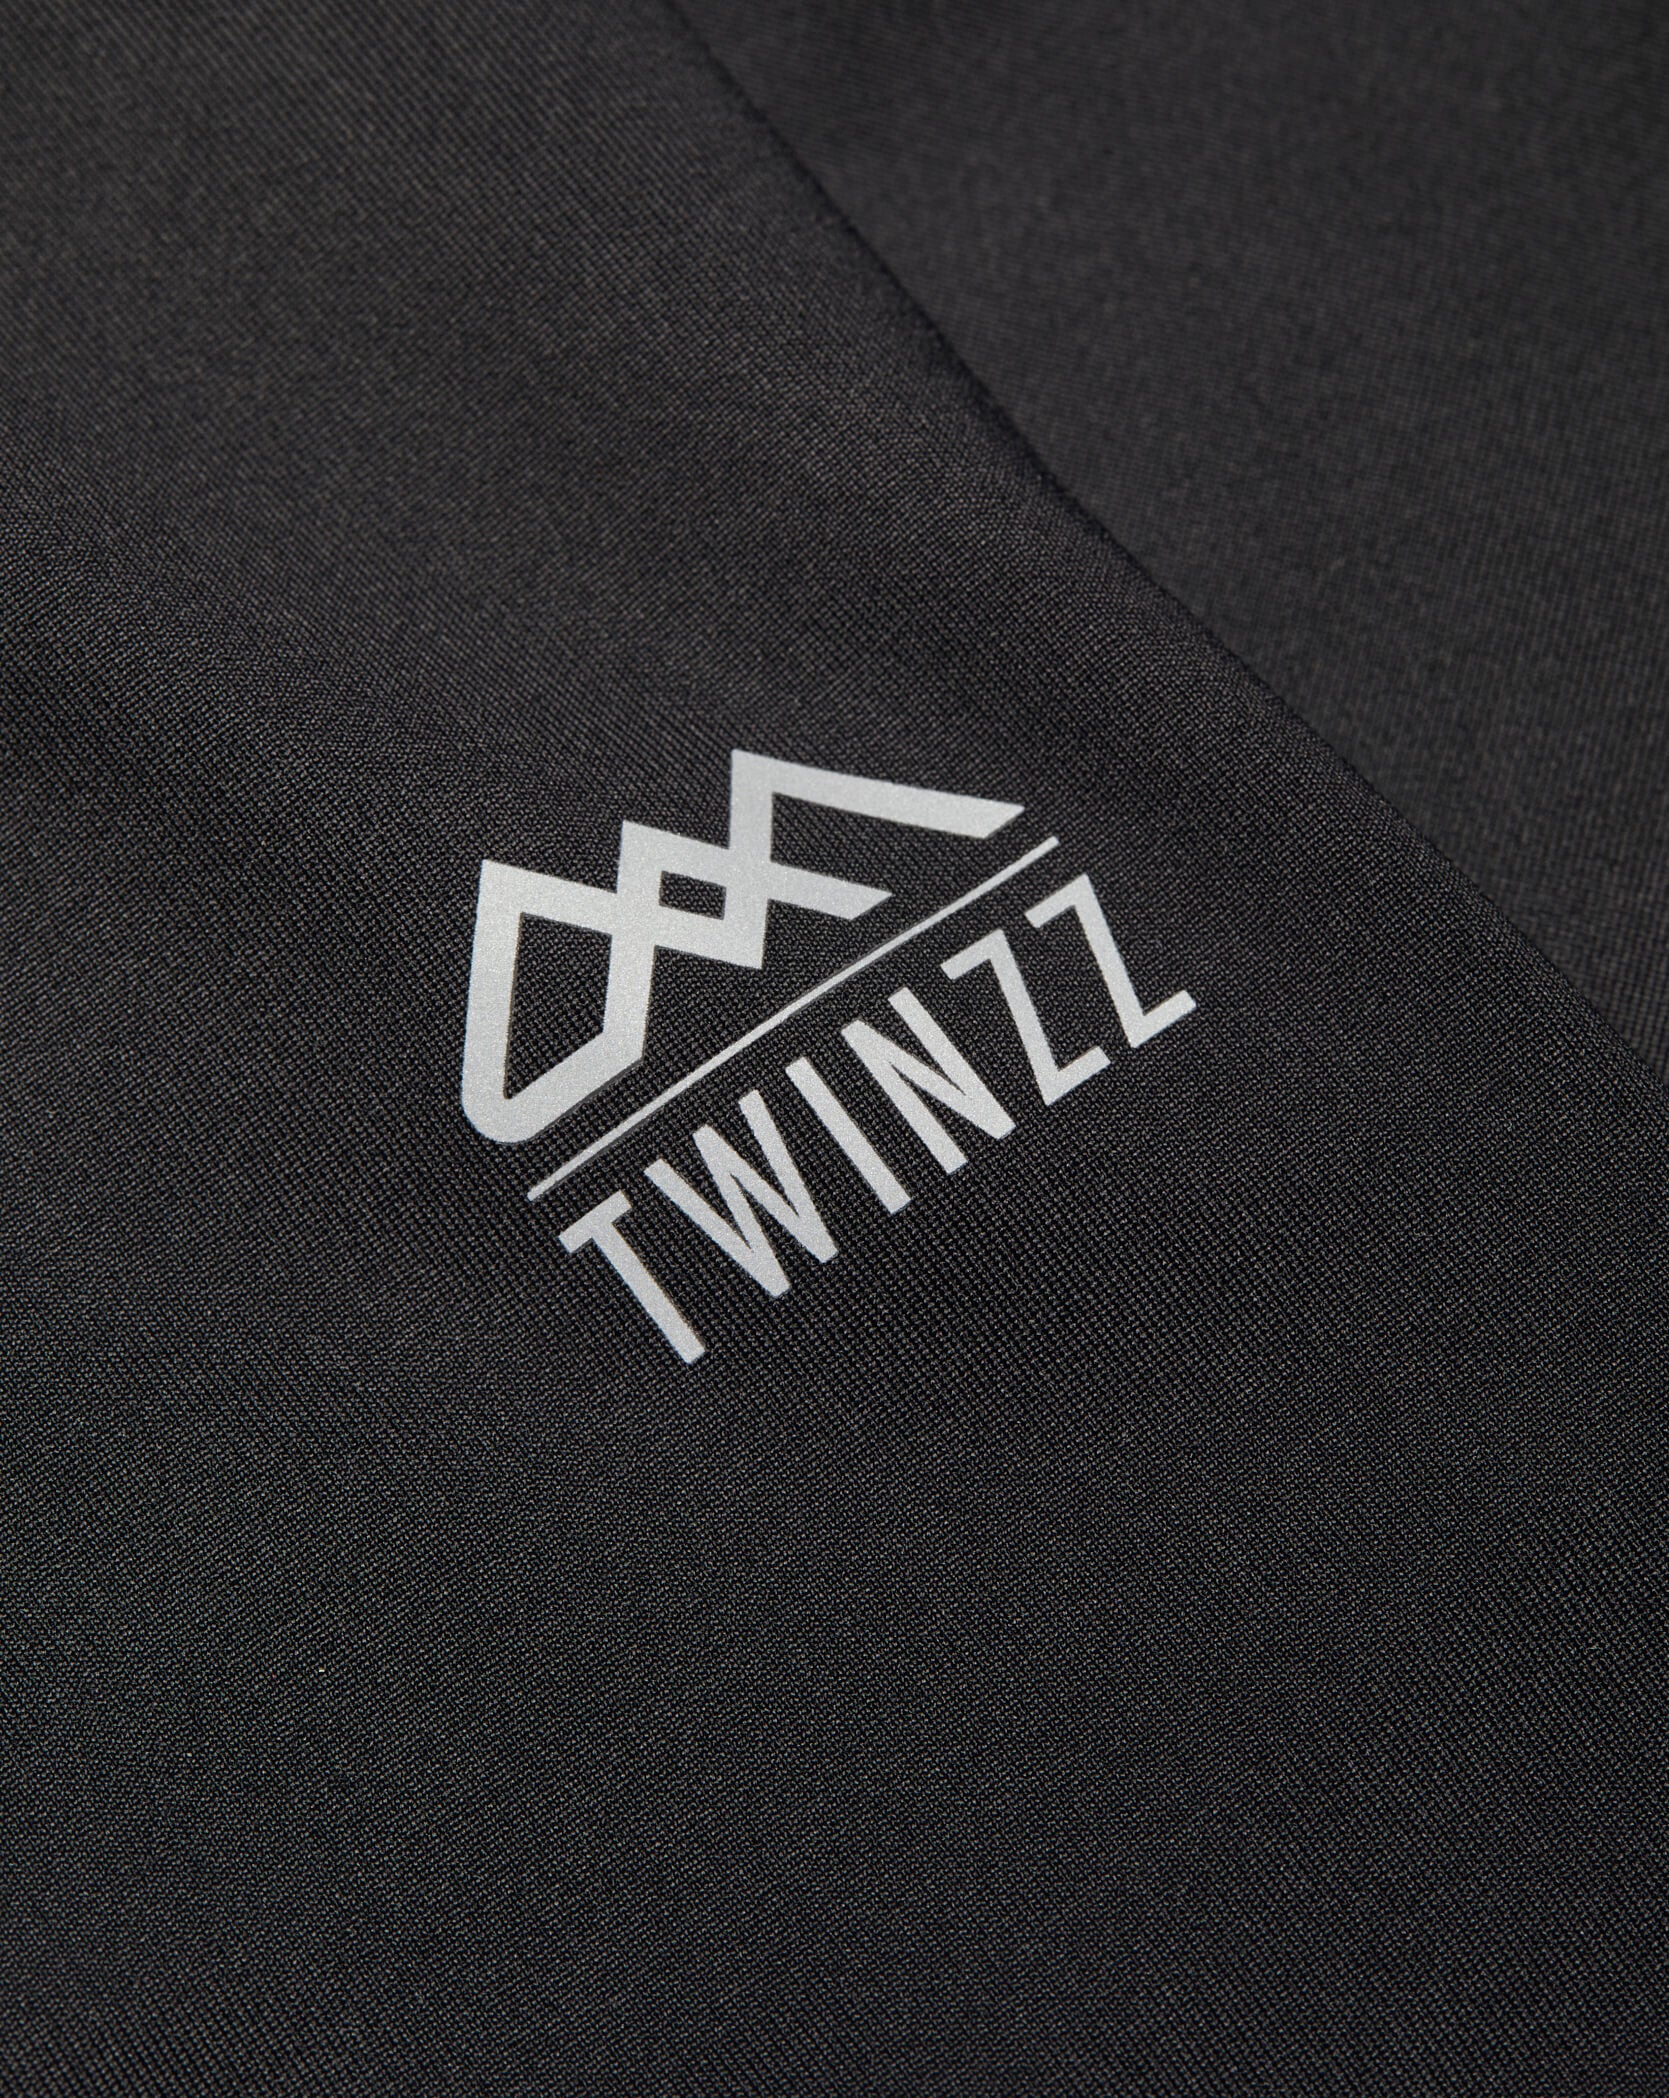 Black Twinzz hybrid pant logo